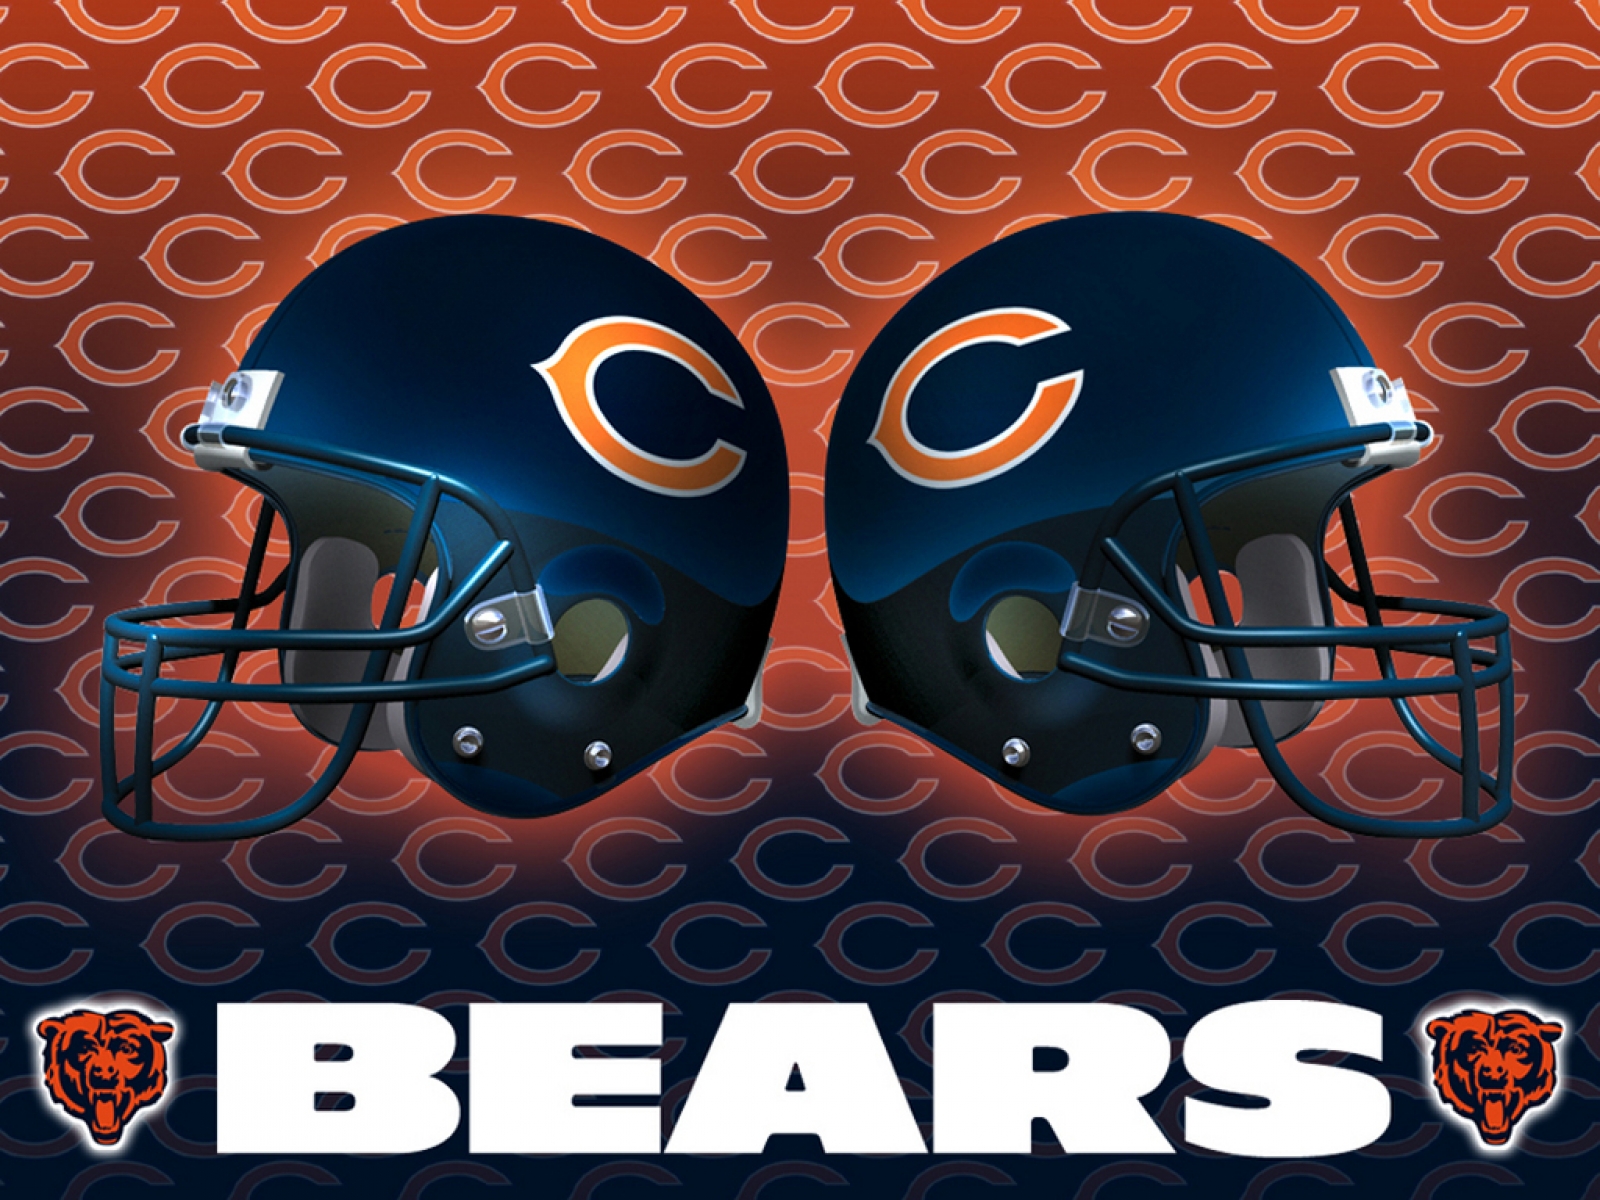 Chicago Bears Helmet